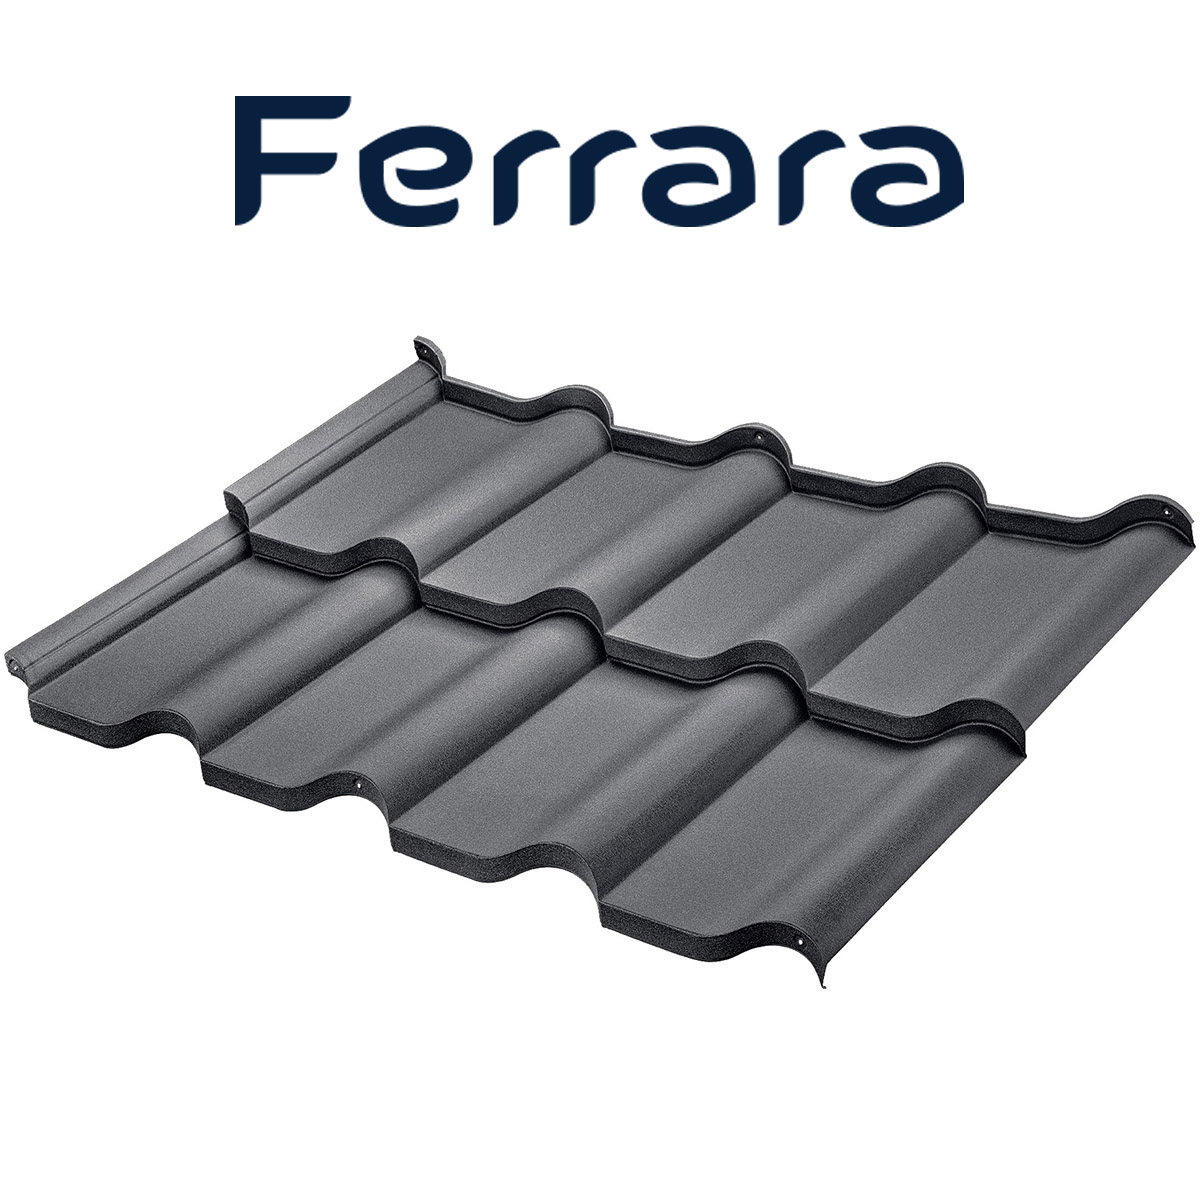 Țiglă metalică Ferrara pentru acoperișuri